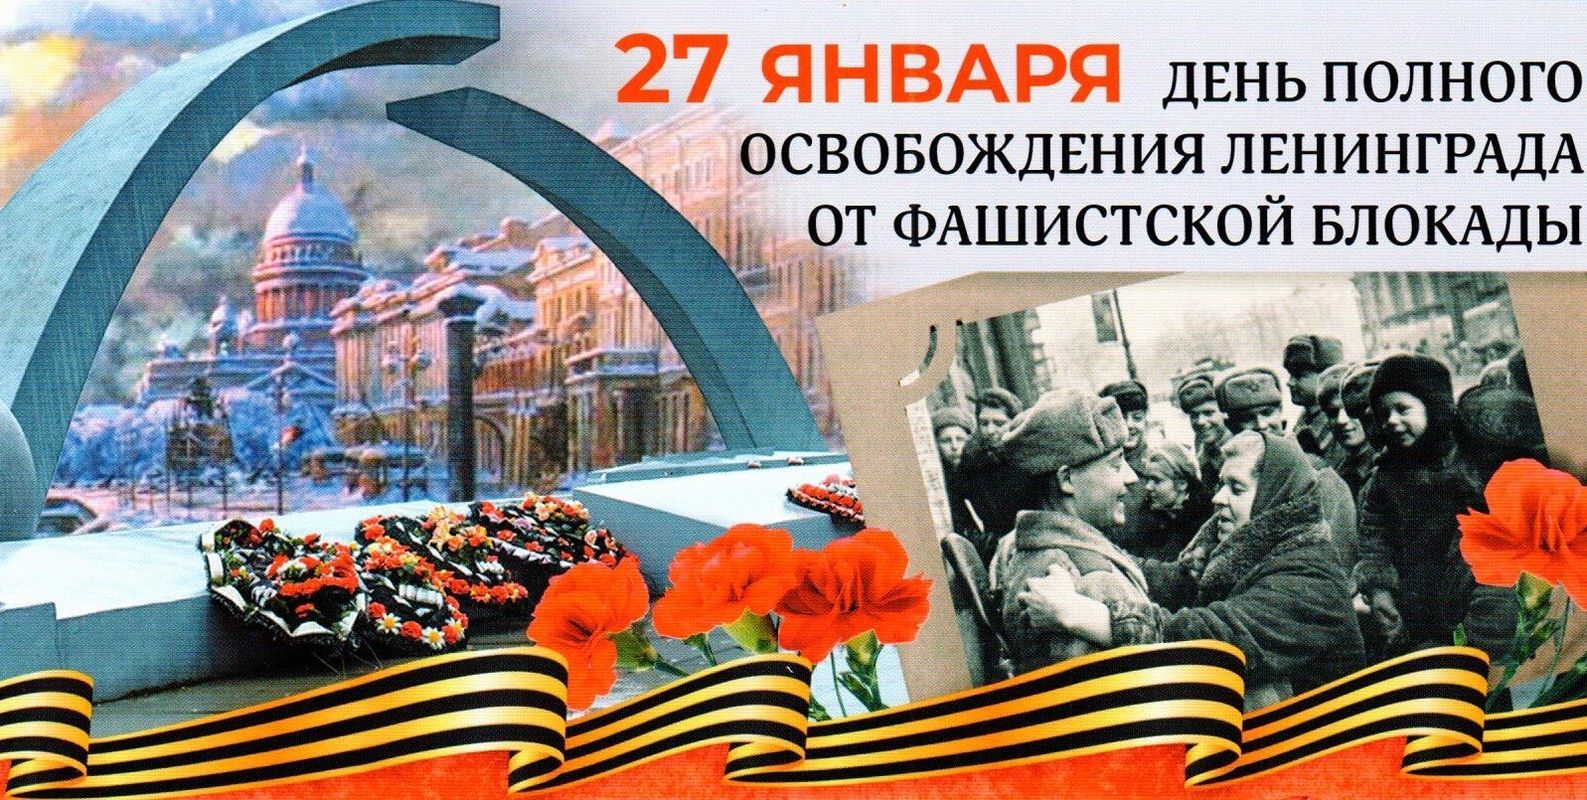 80 let osvobozhdeniya Leningrada